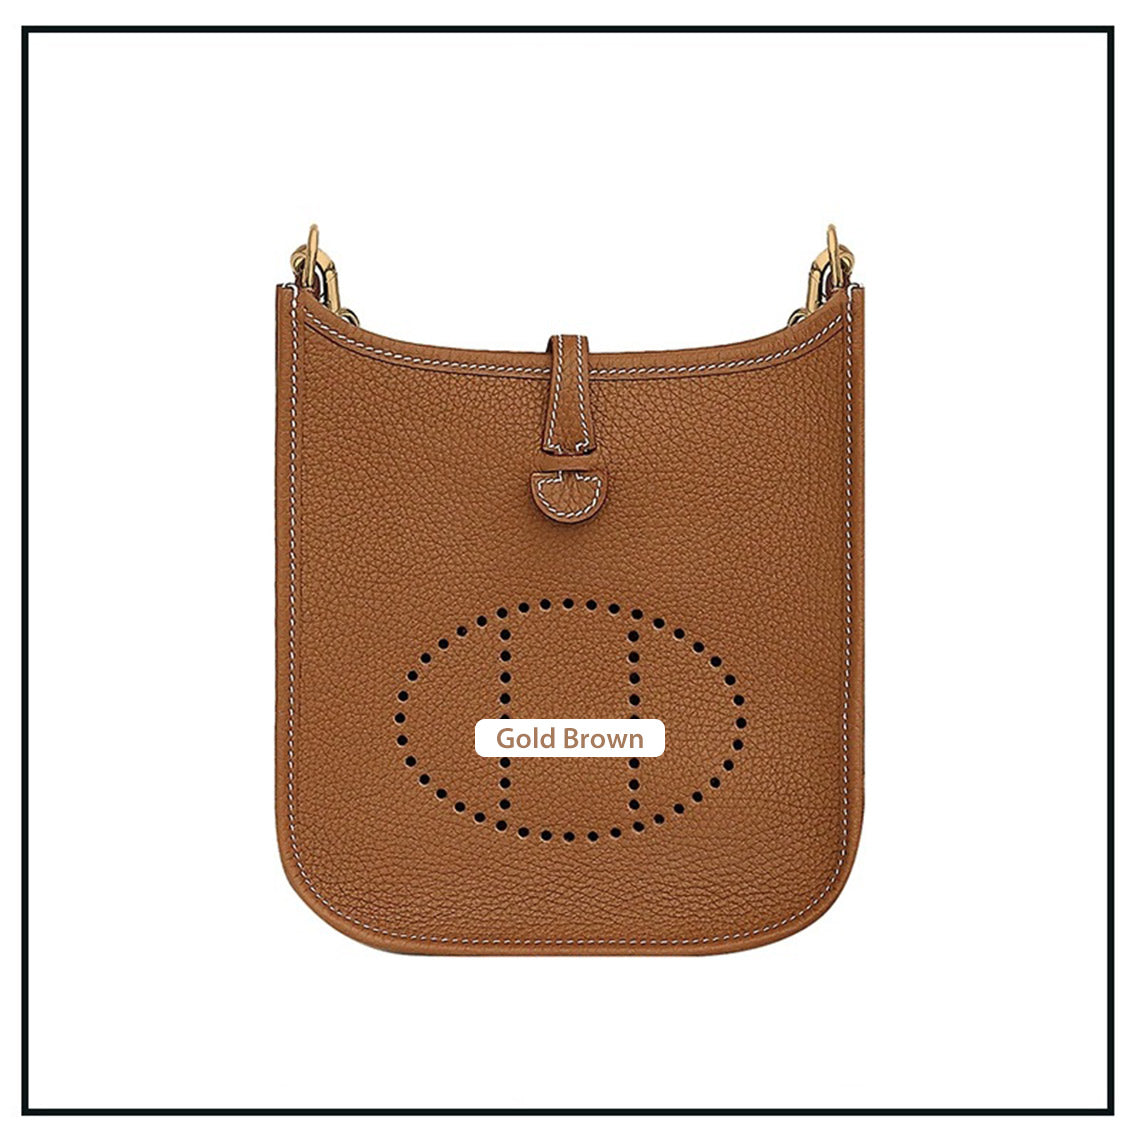 Gold Brown Evelyne Bag | DIY Hermes Bag Leather Kit - Mini Size  | POPSEWING®